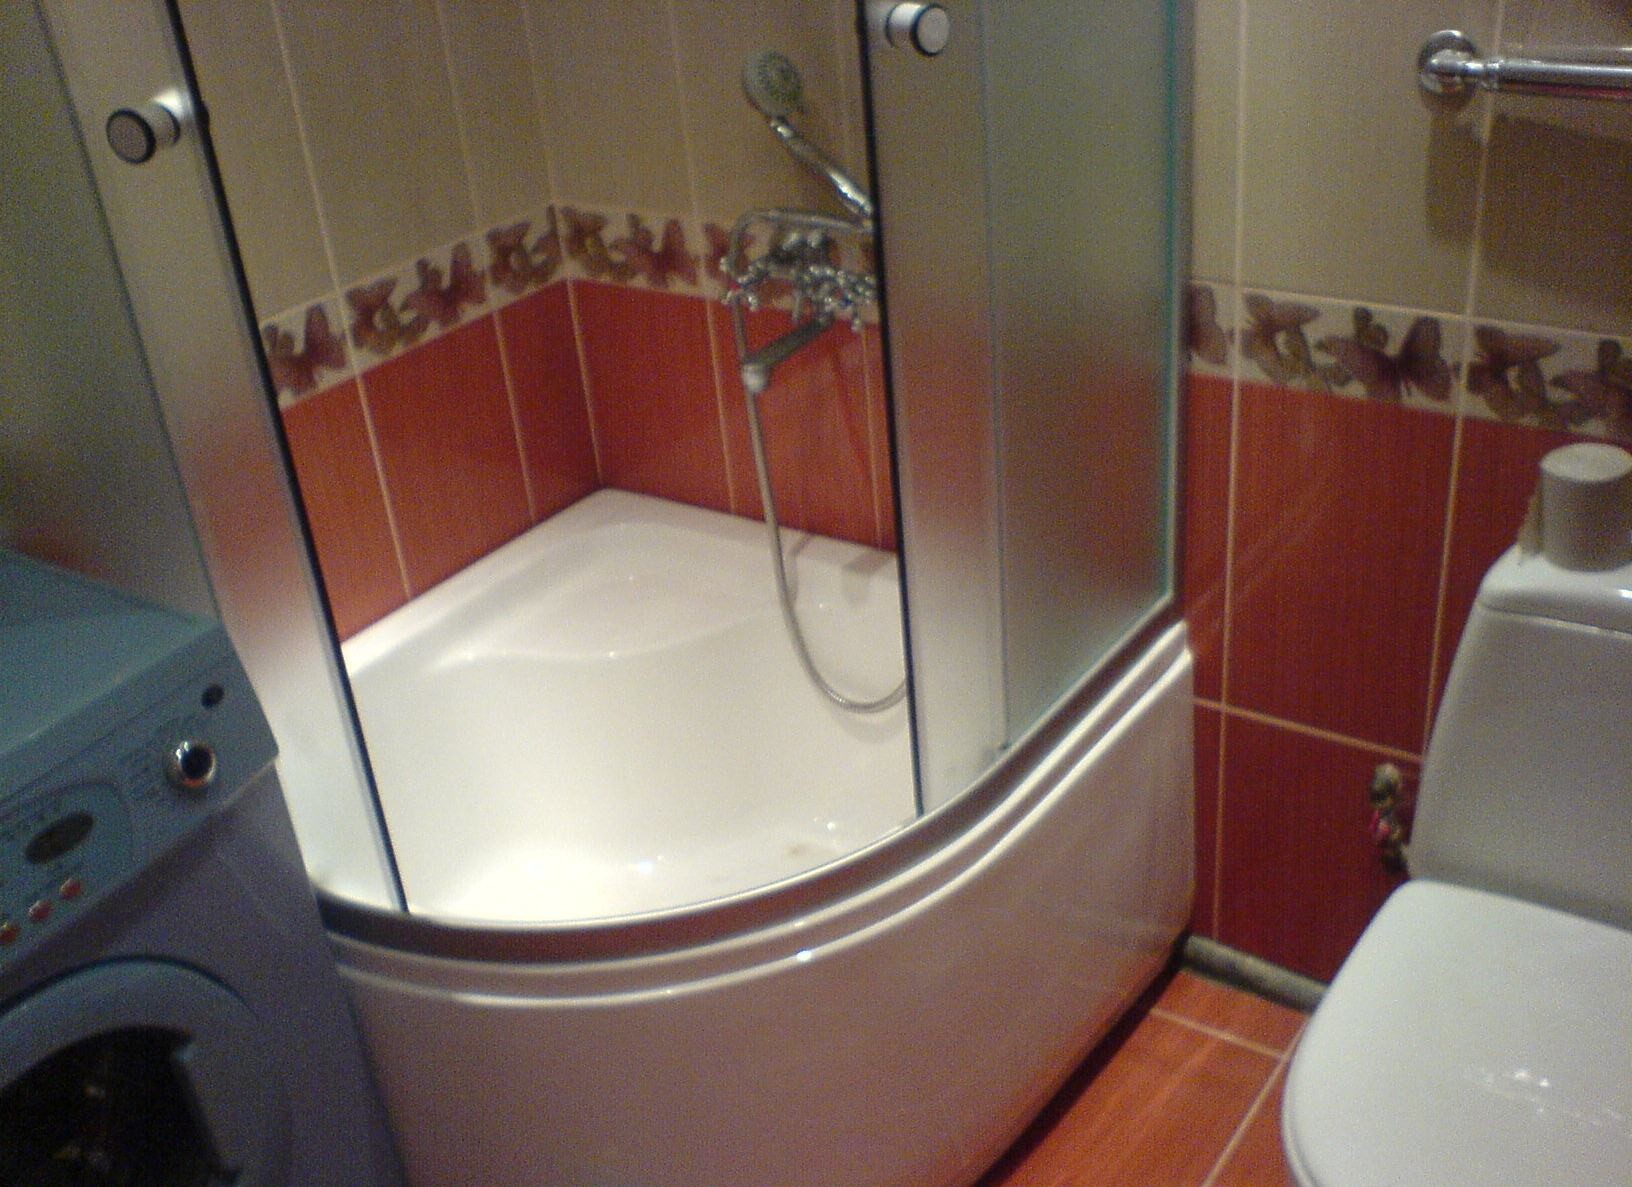 Дизайн ванной комнаты с душевой и ванной 8 кв м